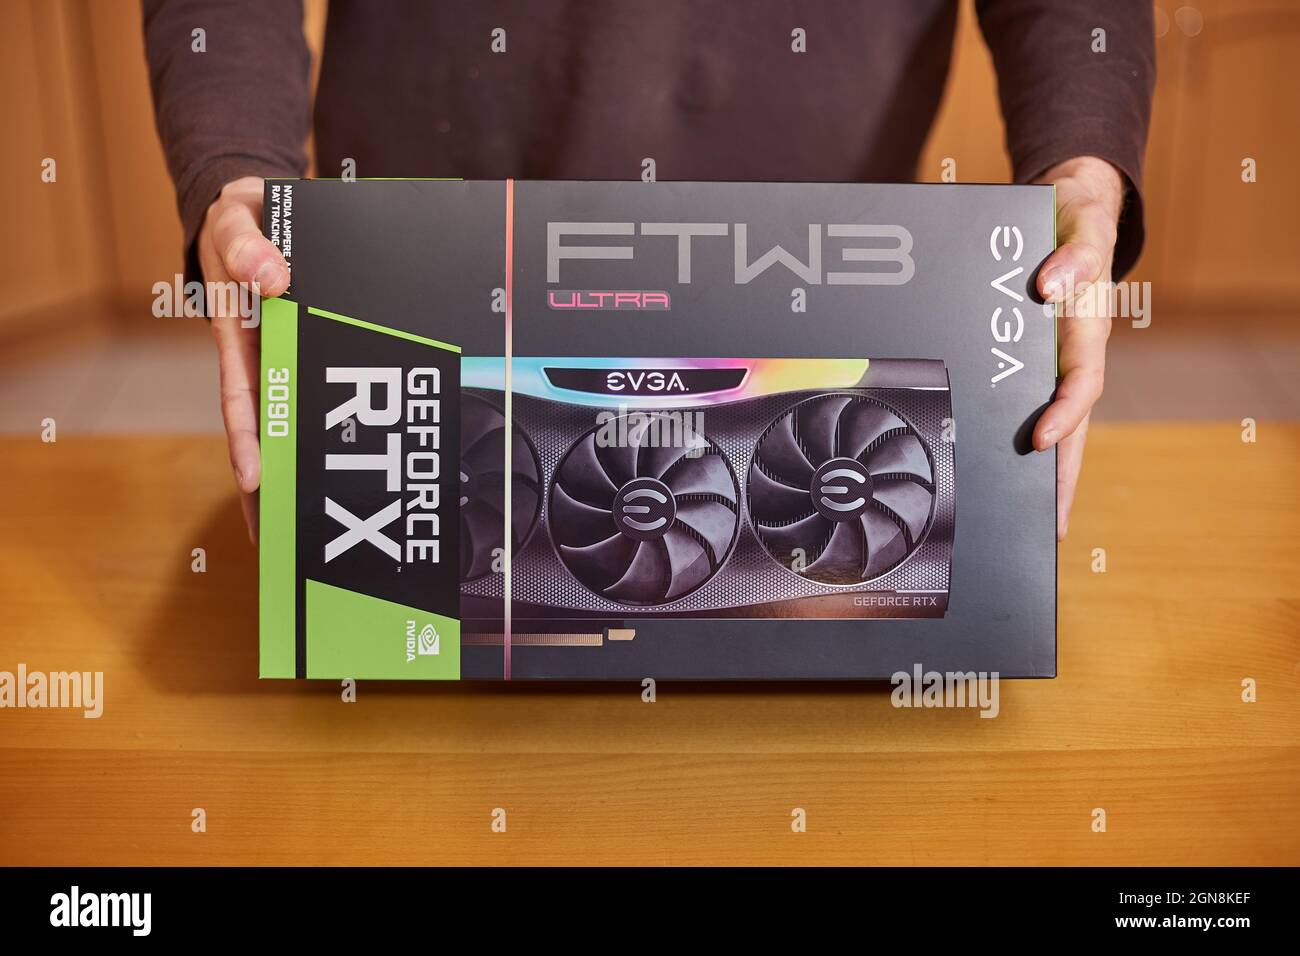 Comprar EVGA GeForce RTX 3090 Nvidia GPU en una tienda Fotografía de stock  - Alamy